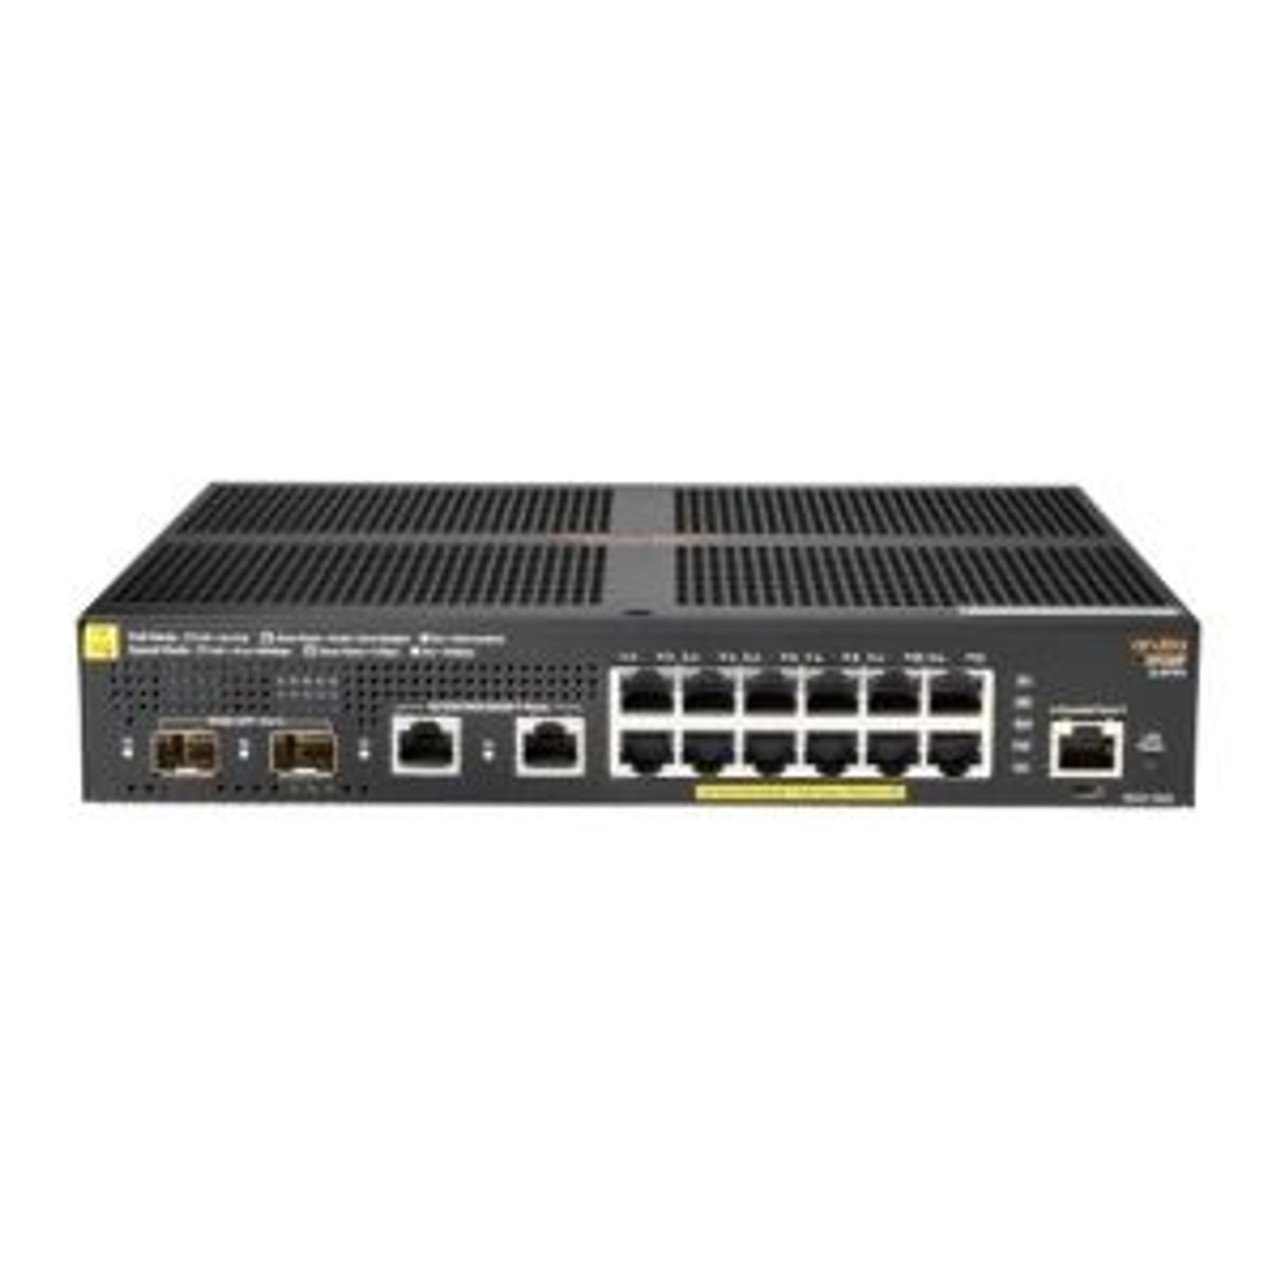 JL693A#B2E | Aruba | 16 Ports Yes Ethernet Switch